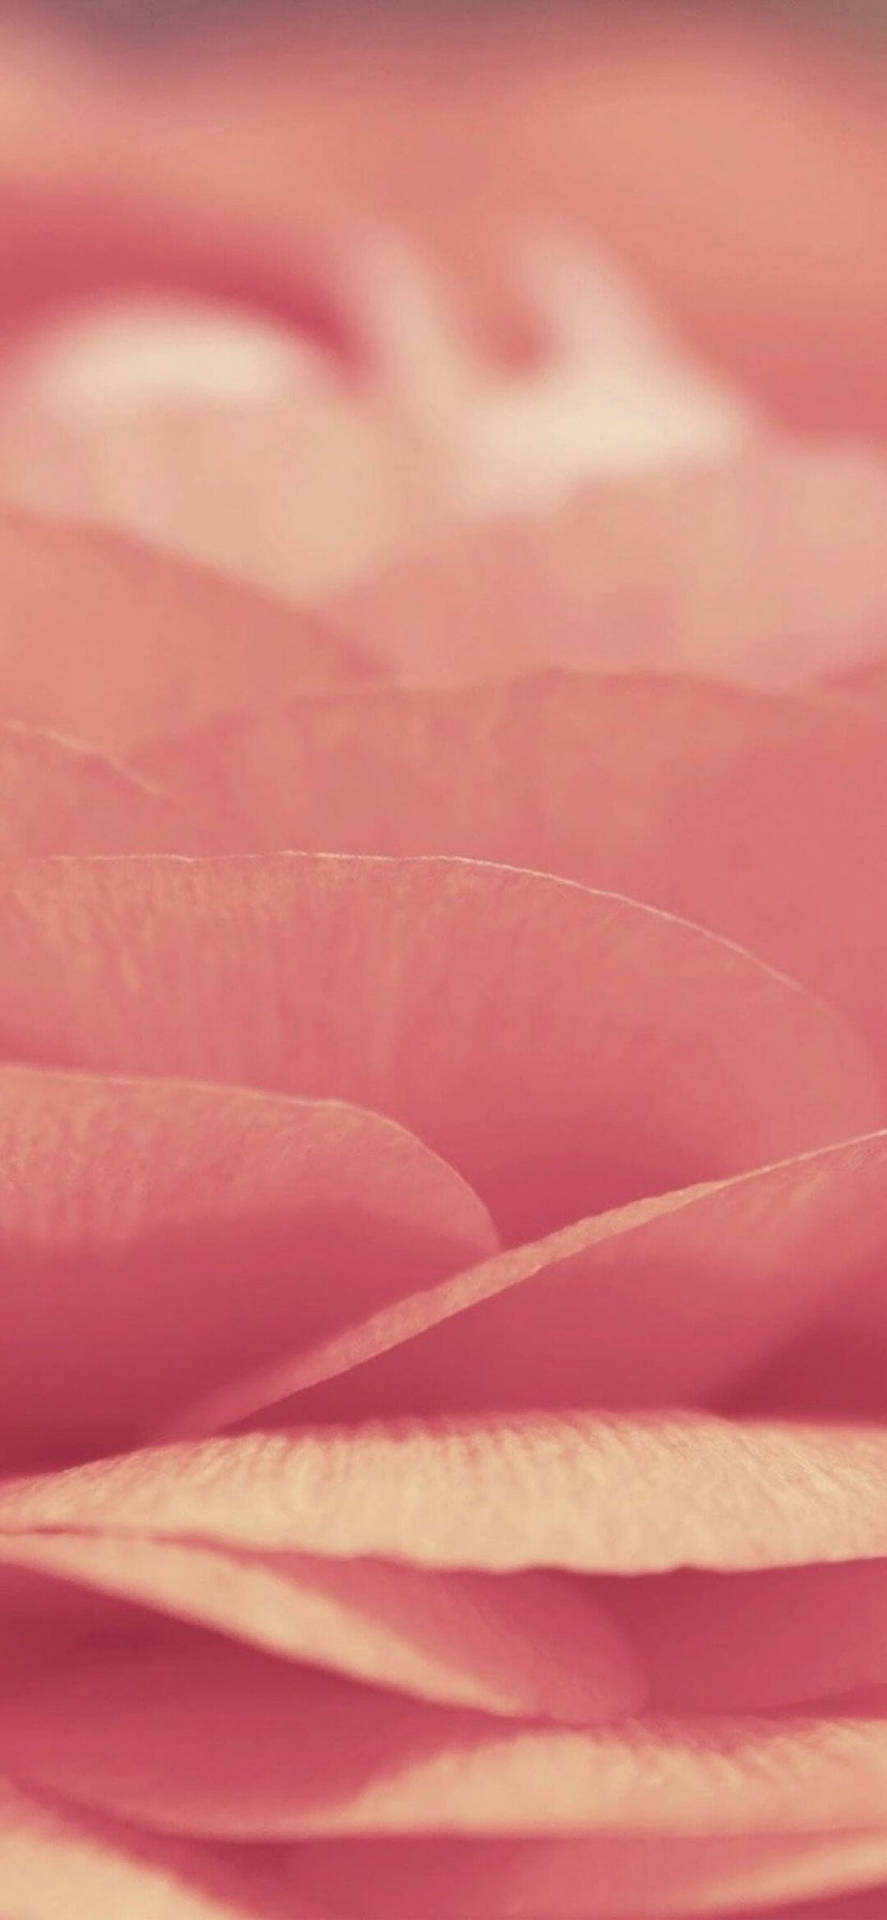 Schaudir Dieses Trendige Rosa Iphone Xr An! Wallpaper